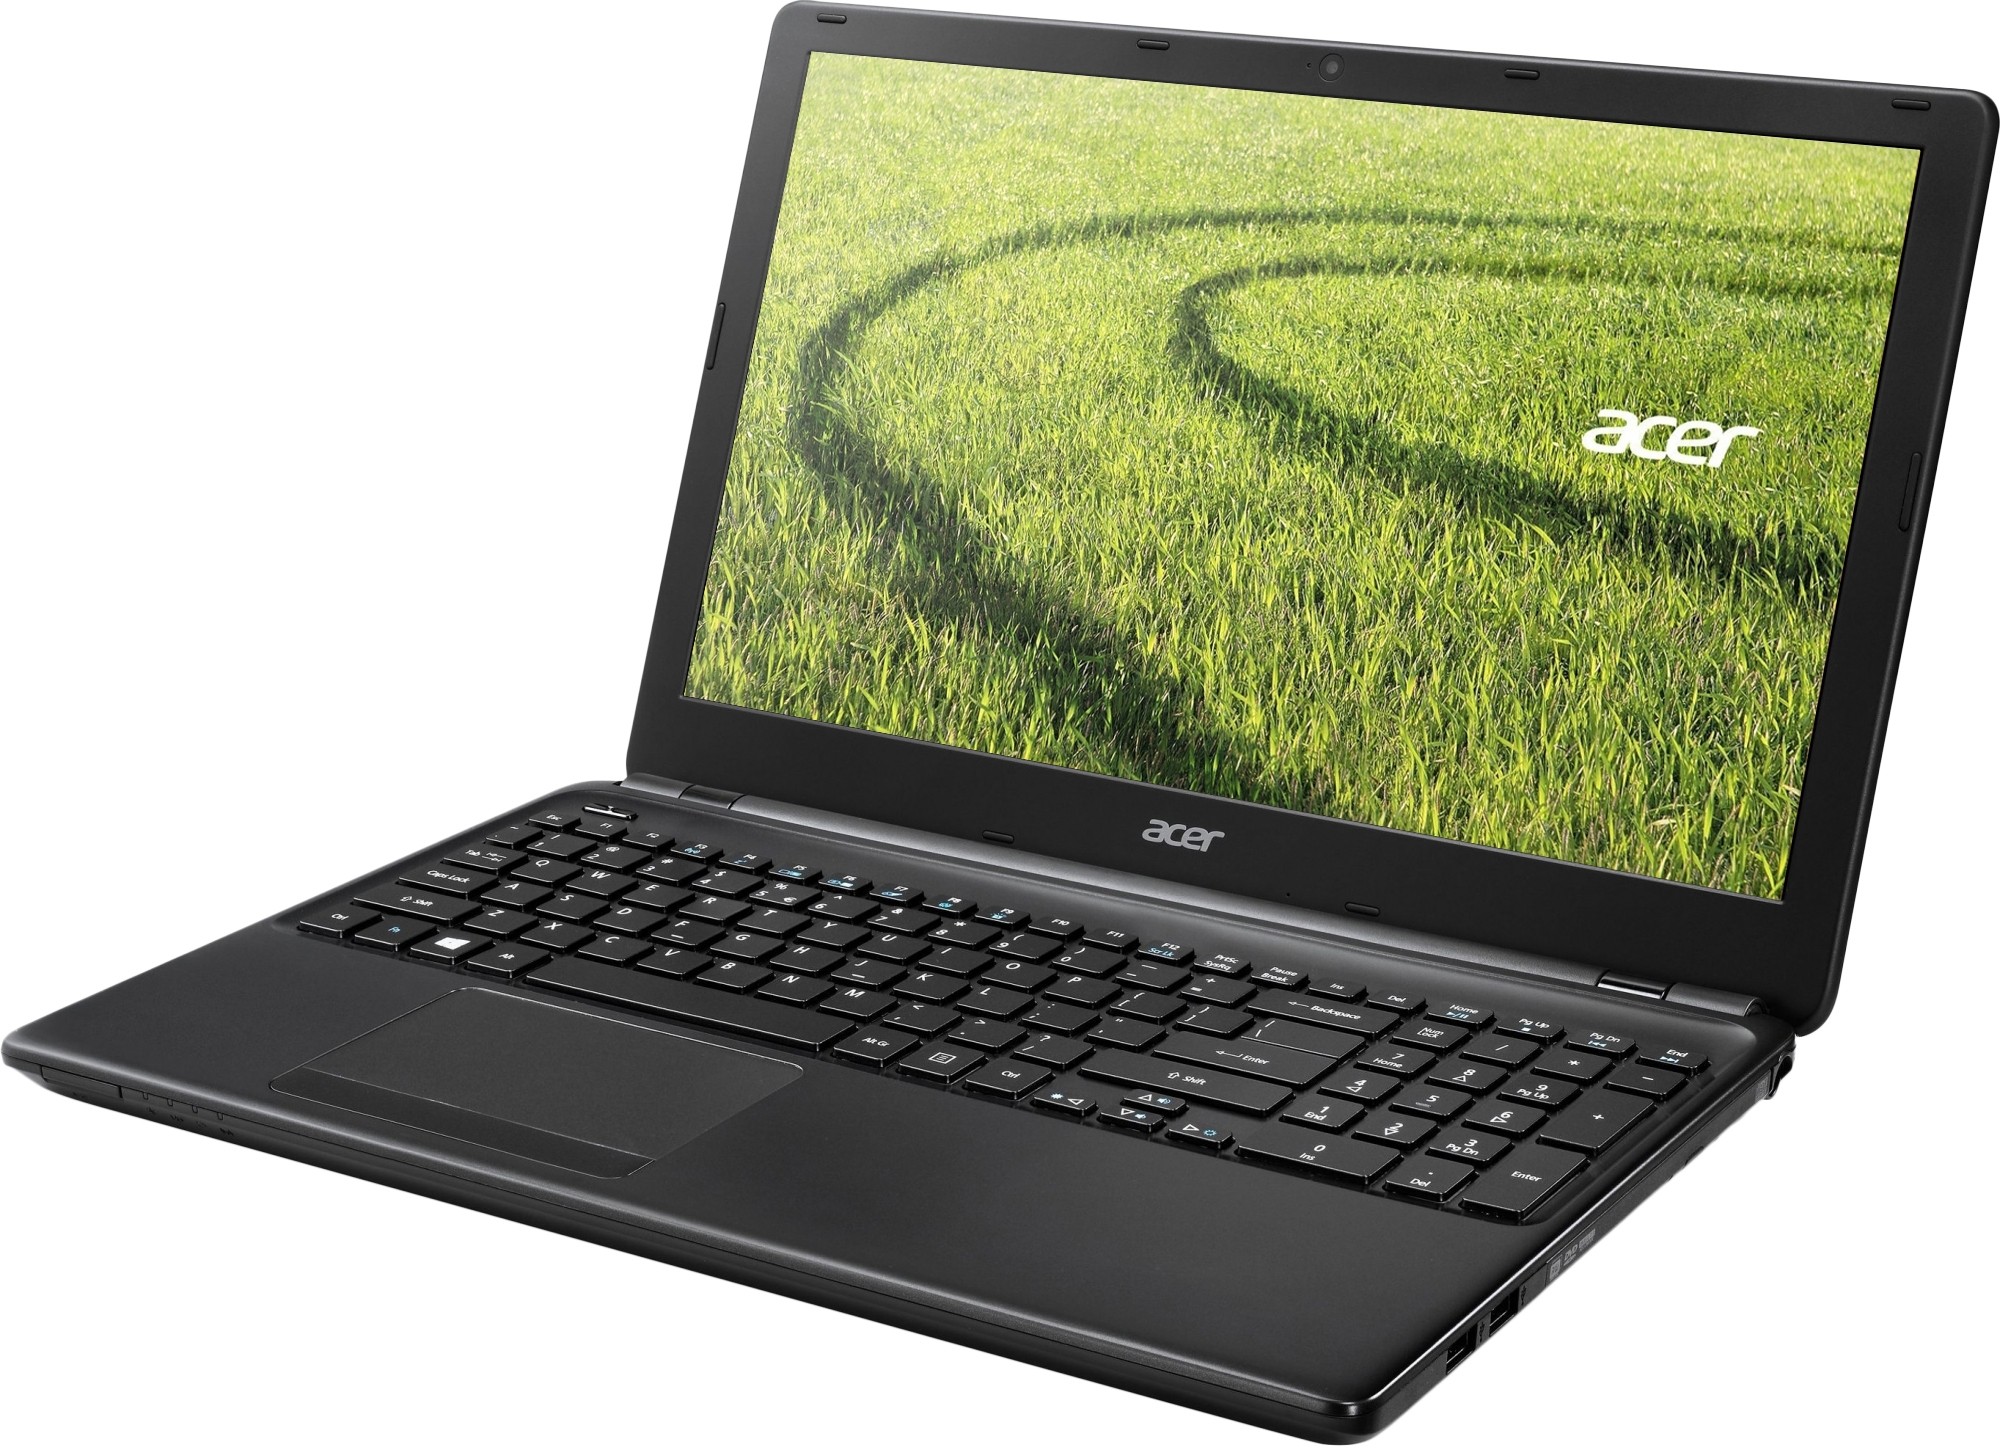 Acer Aspire E1-510 - зображення 1